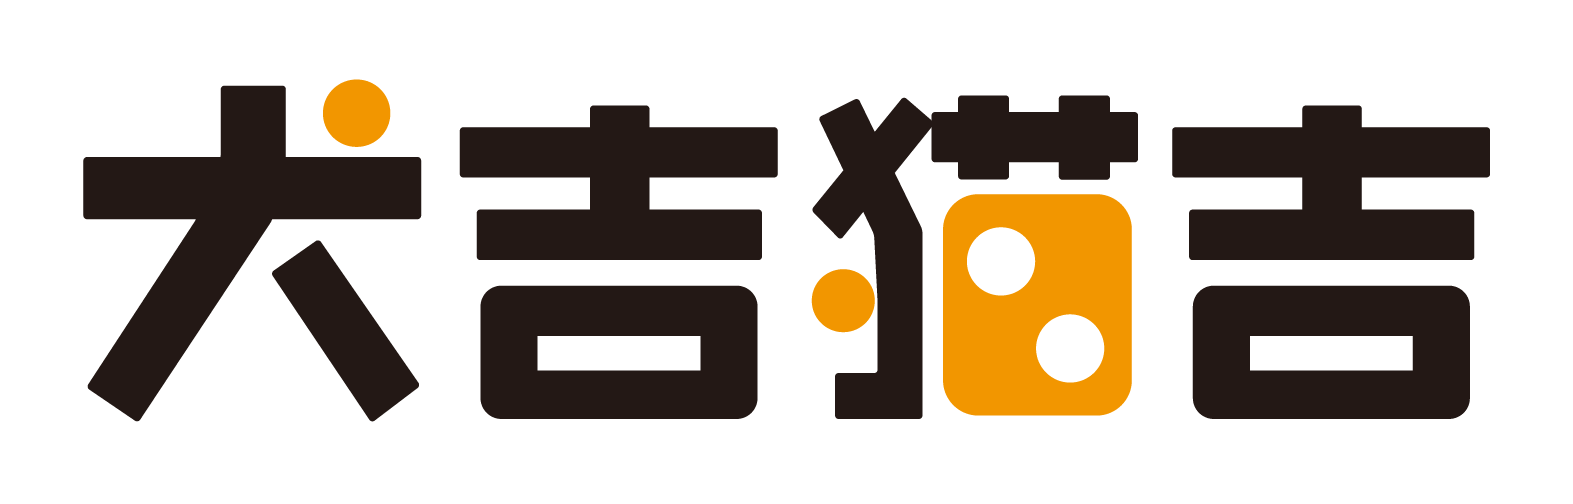 株式会社犬吉猫吉様のロゴ